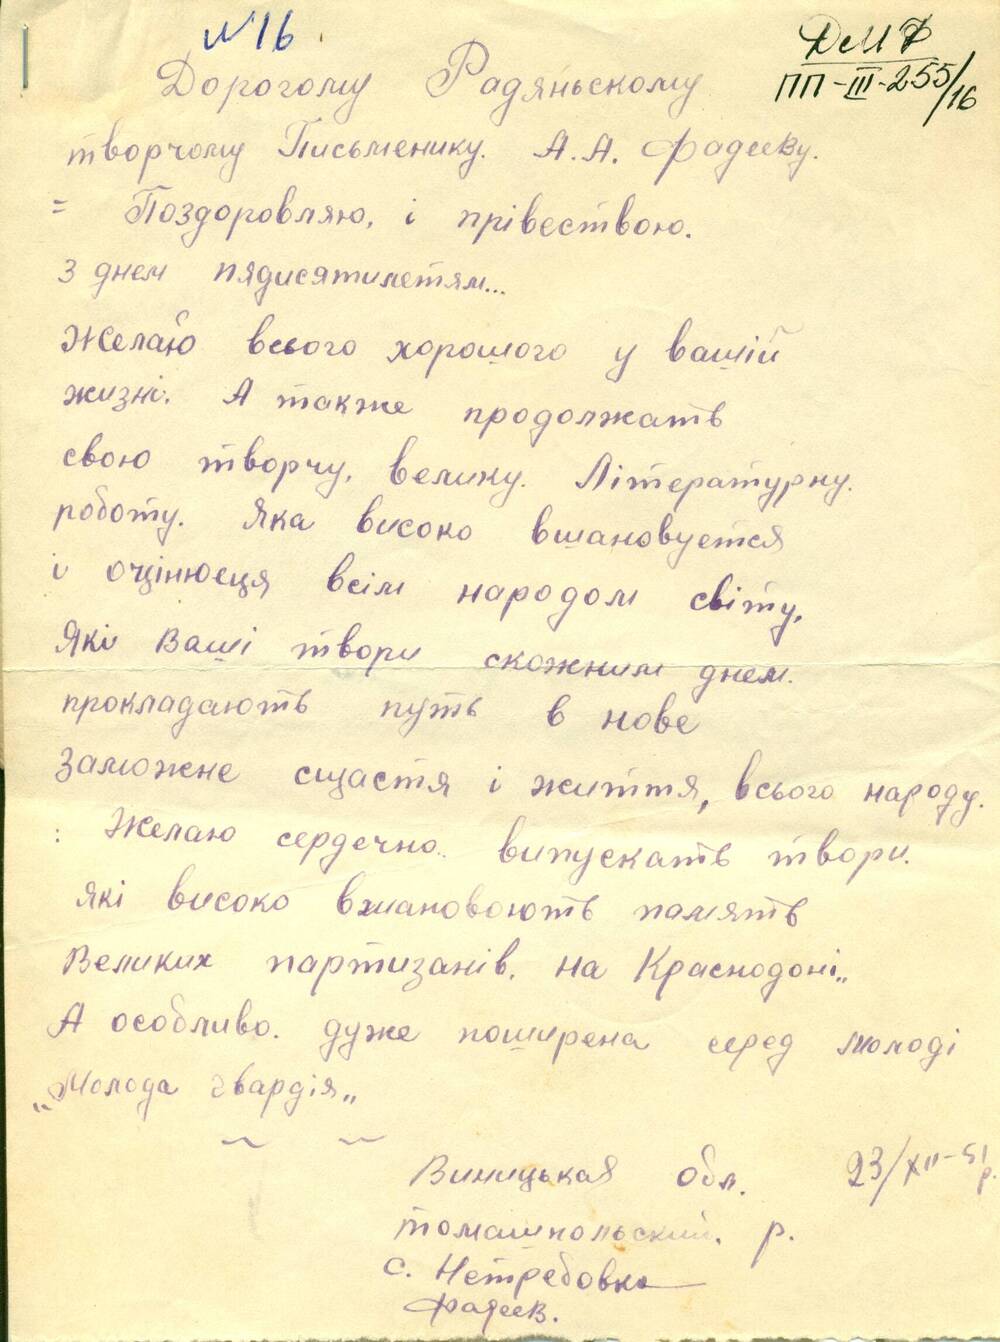 Письмо от читателей Винницкой области с.Нетребовка - Фадееву А.А., поздравление с 50-летием